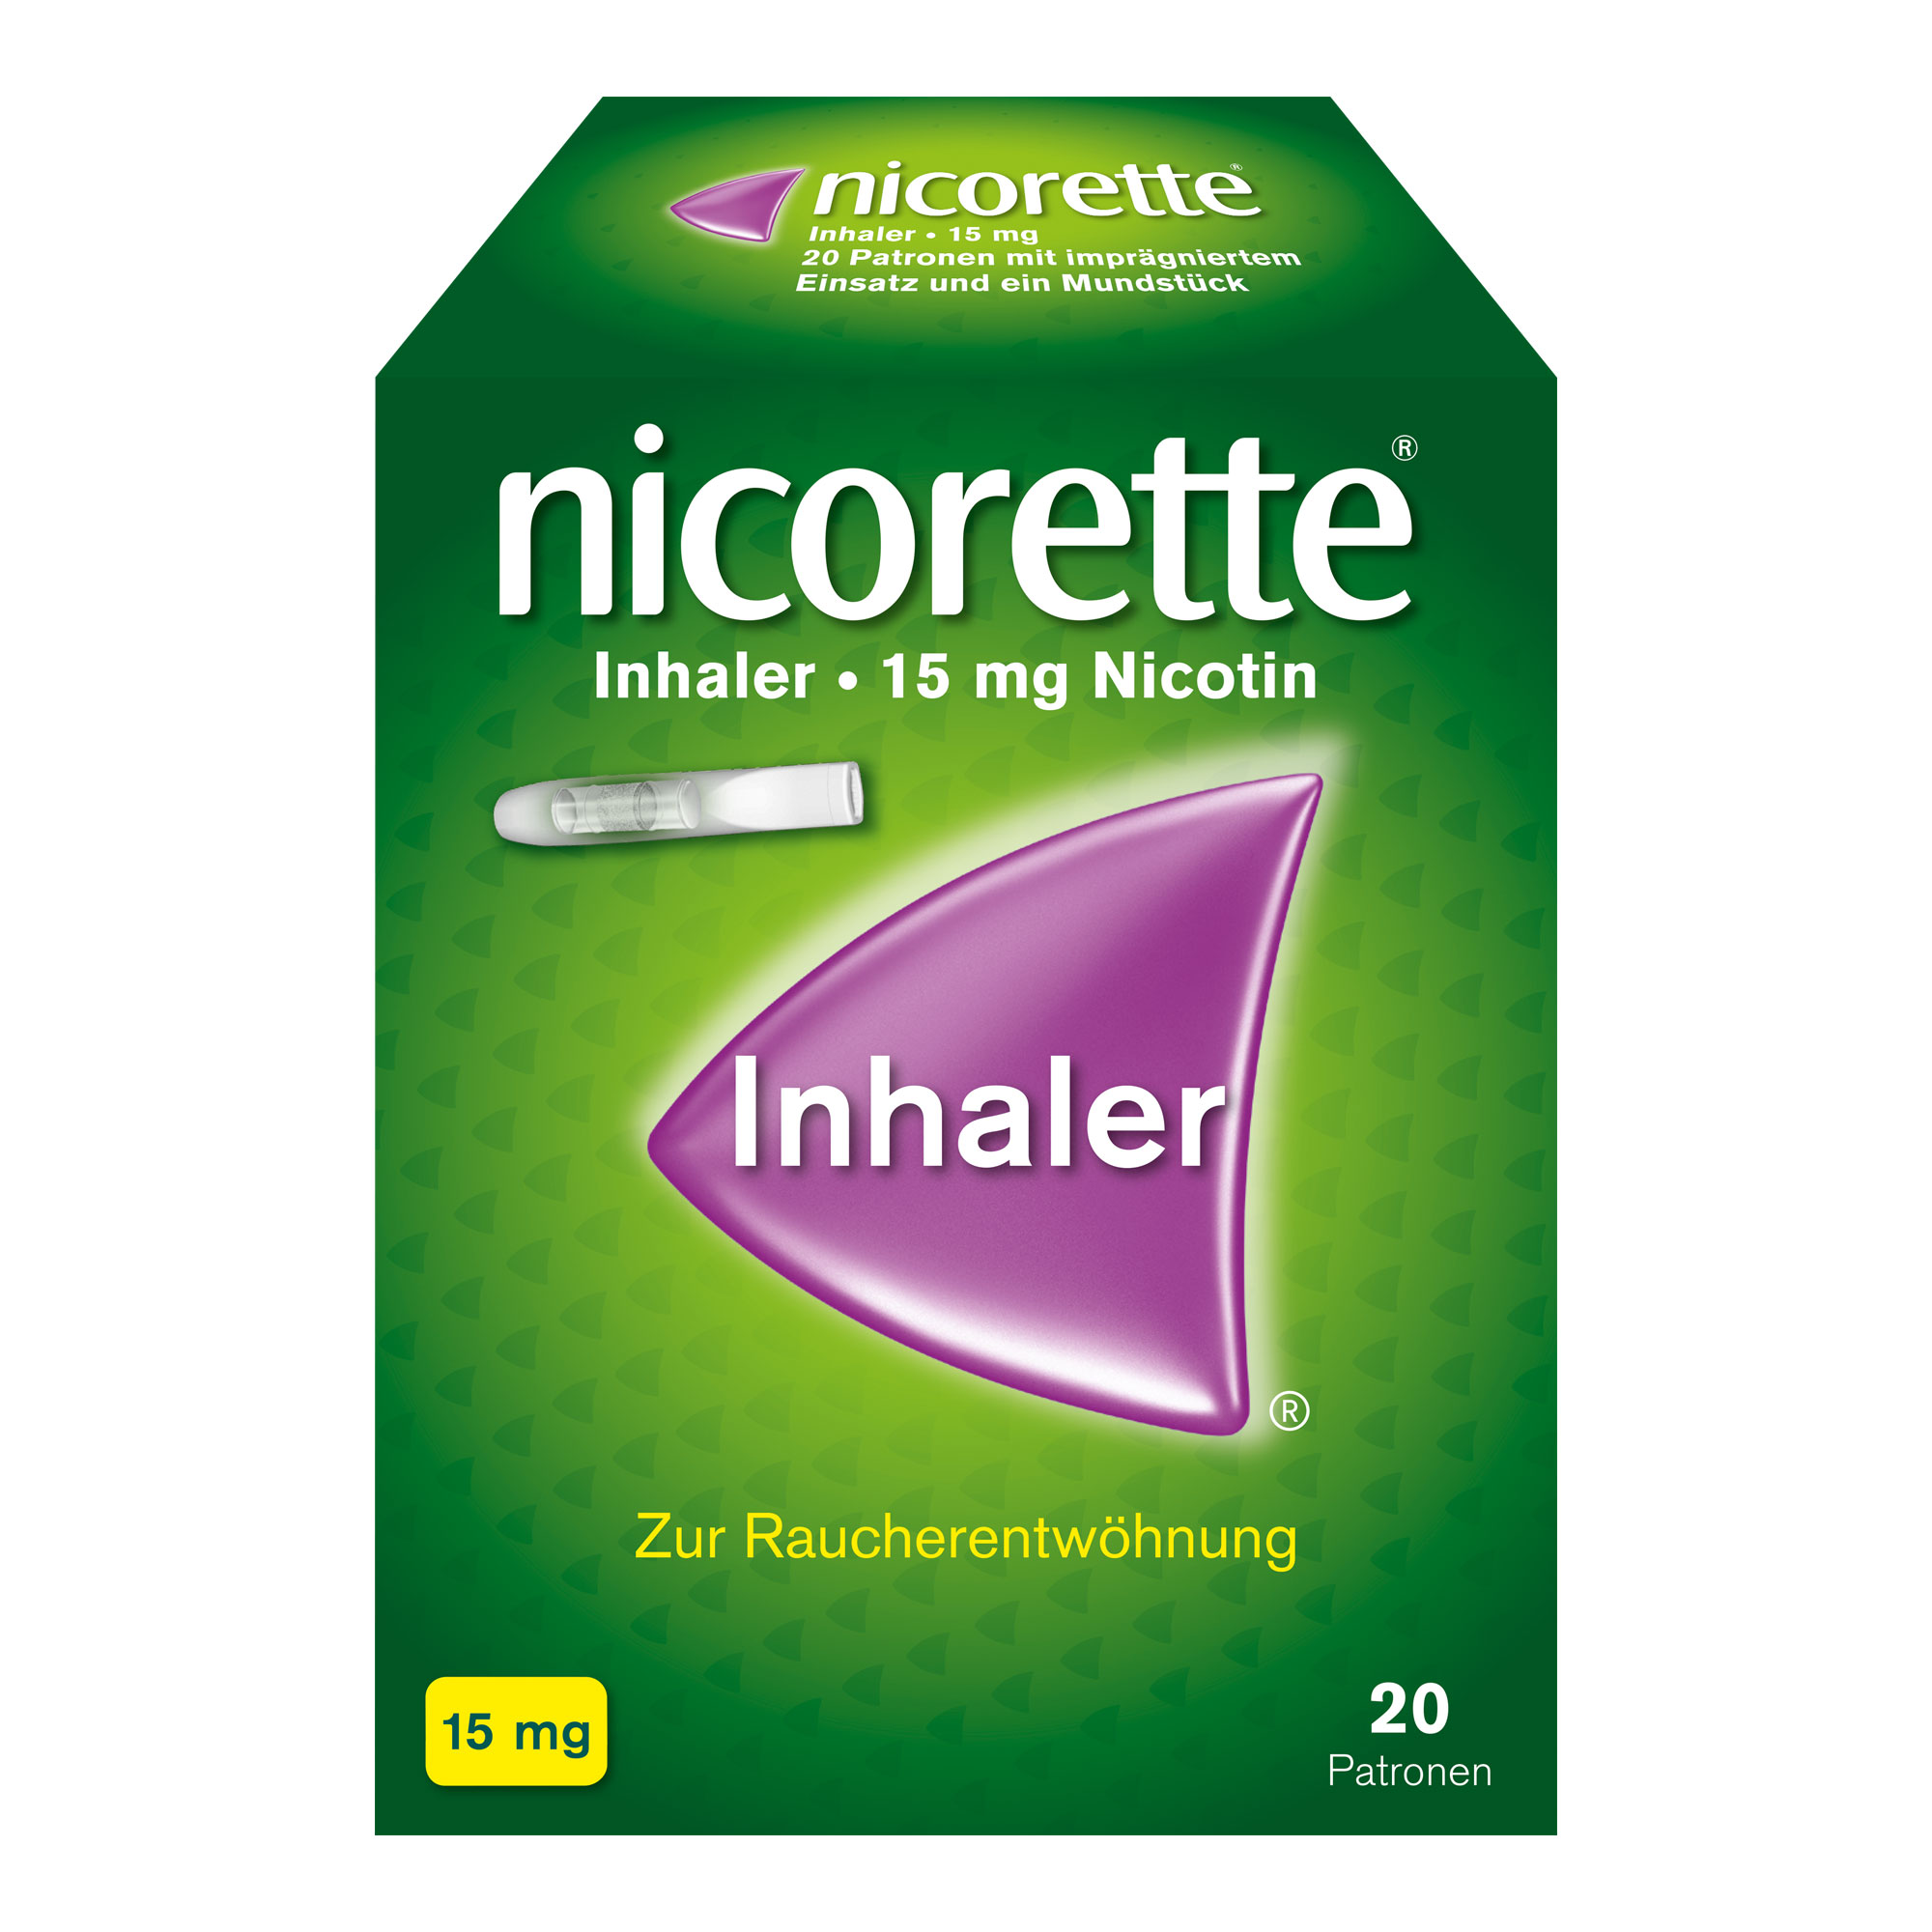 Inhalationsgerät zur Behandlung der Tabakabhängigkeit durch Linderung der Nicotinentzugssymptome.